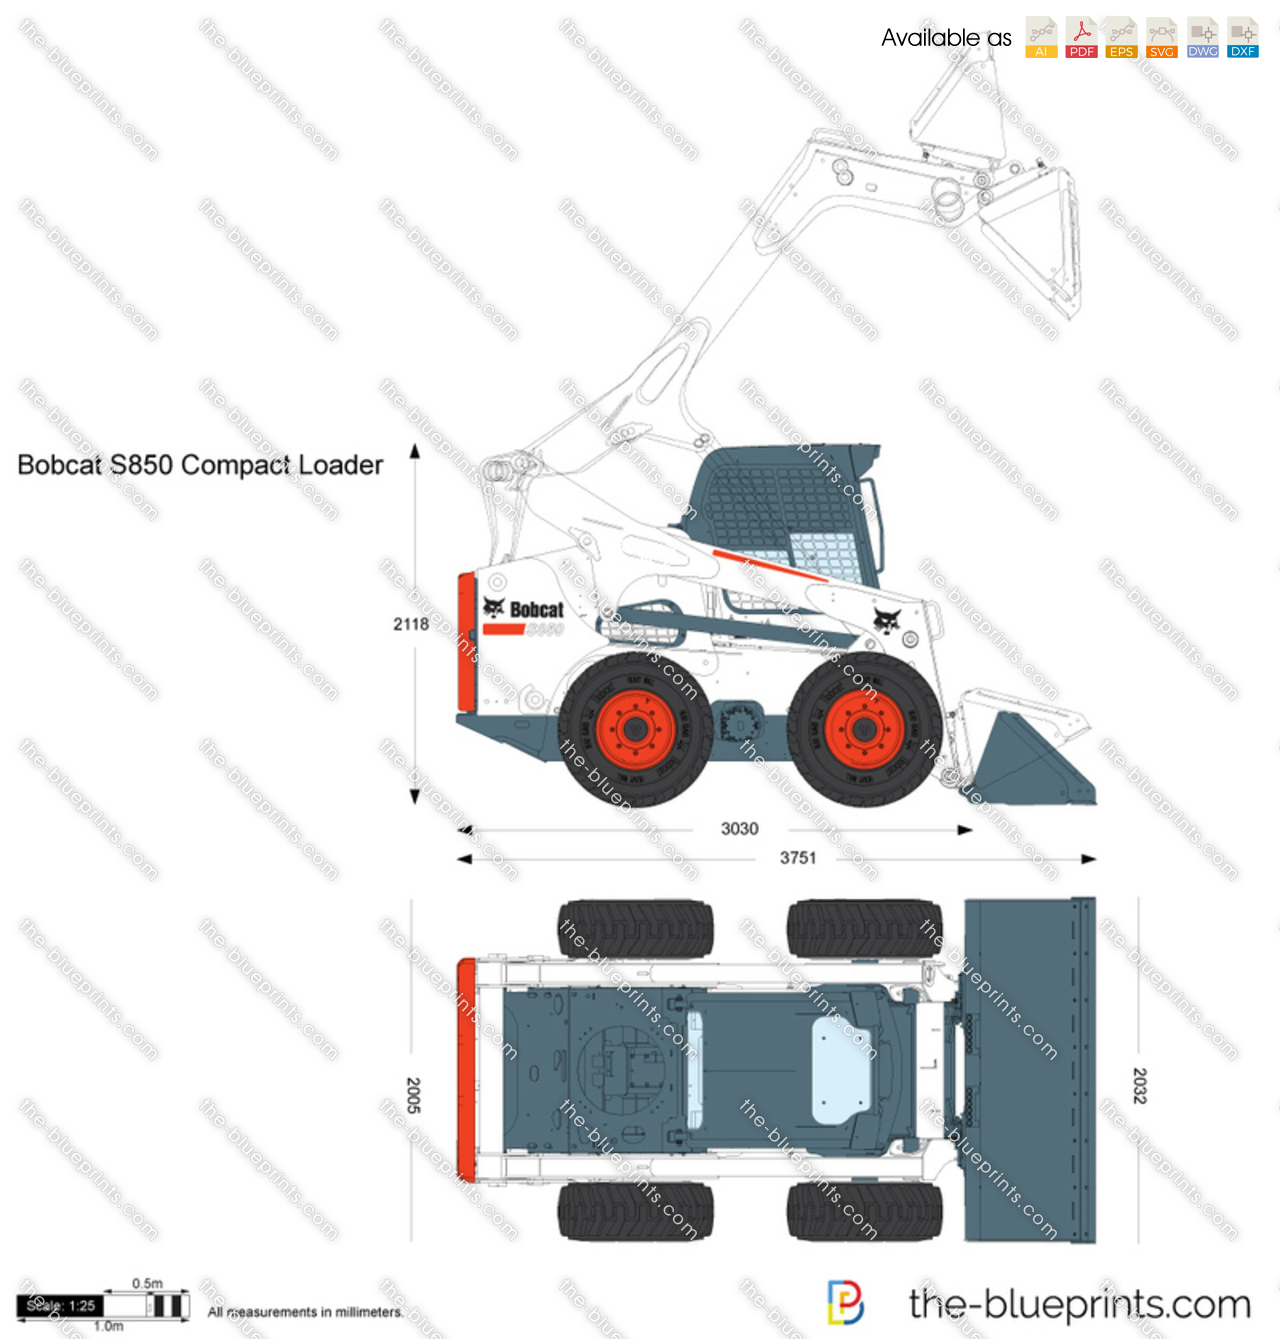 Bobcat S850 Compact Loader